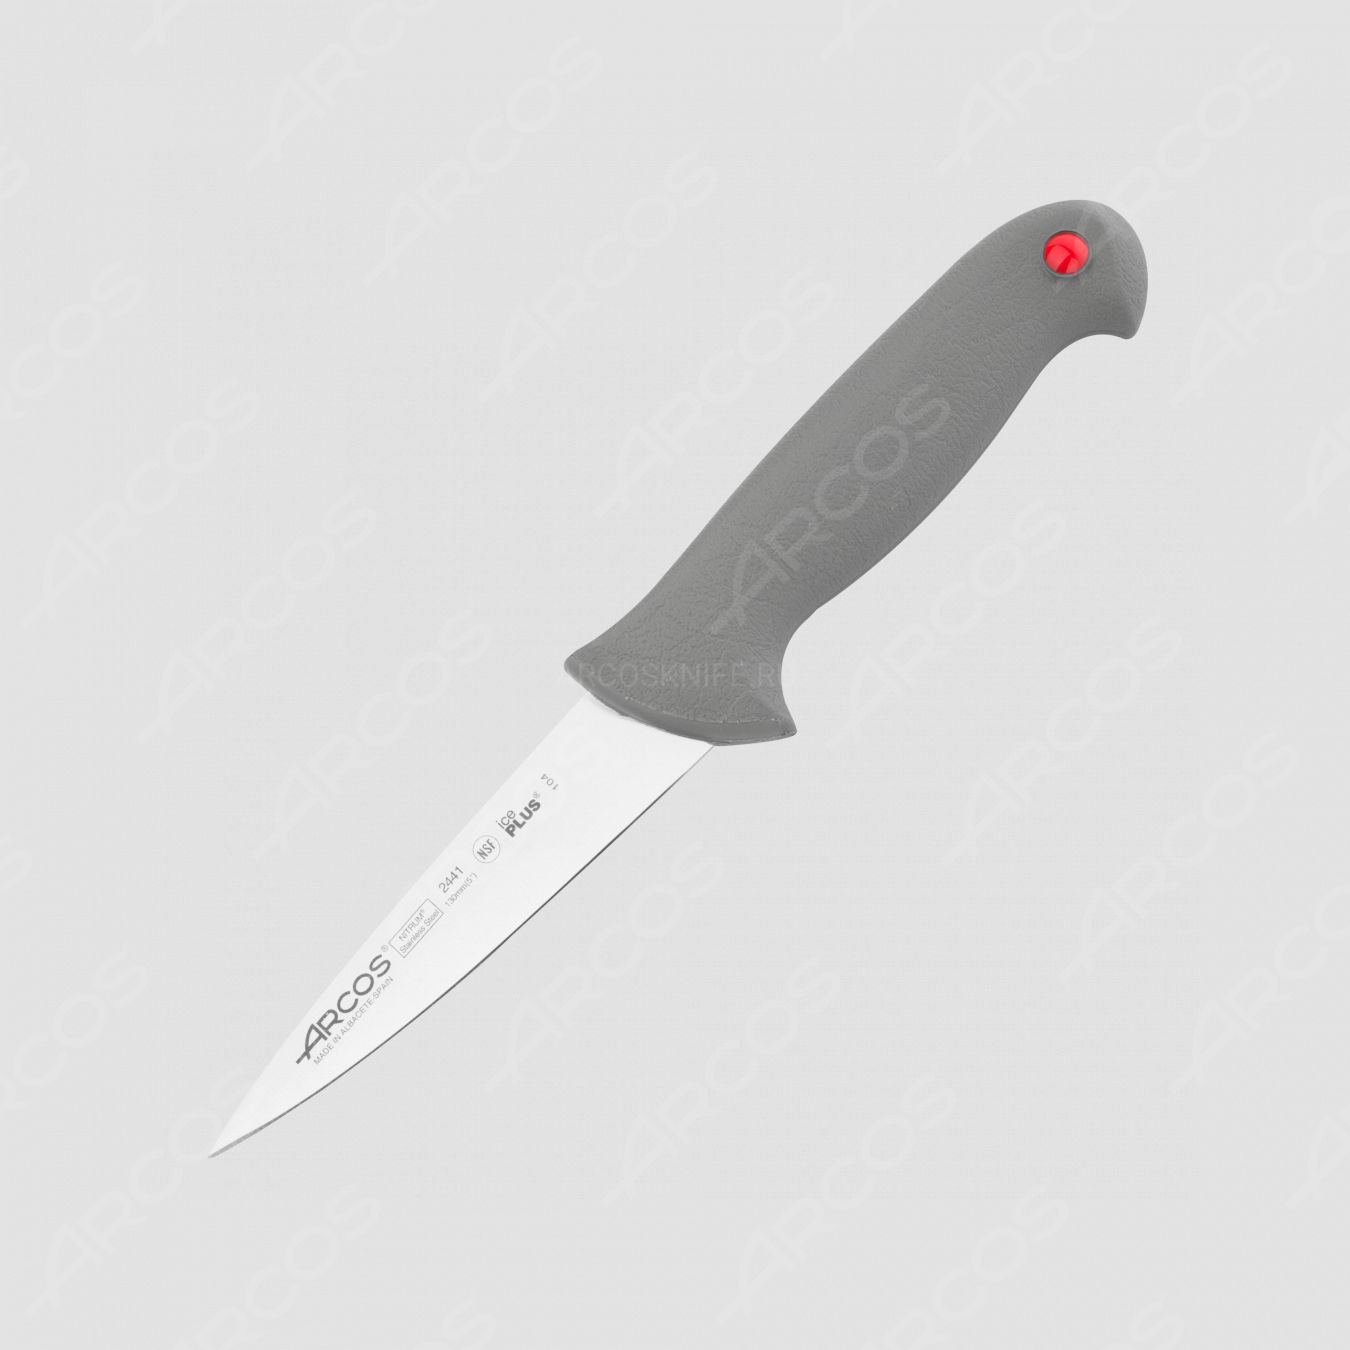 Нож кухонный разделочный 13 см, серия Colour-prof, ARCOS, Испания